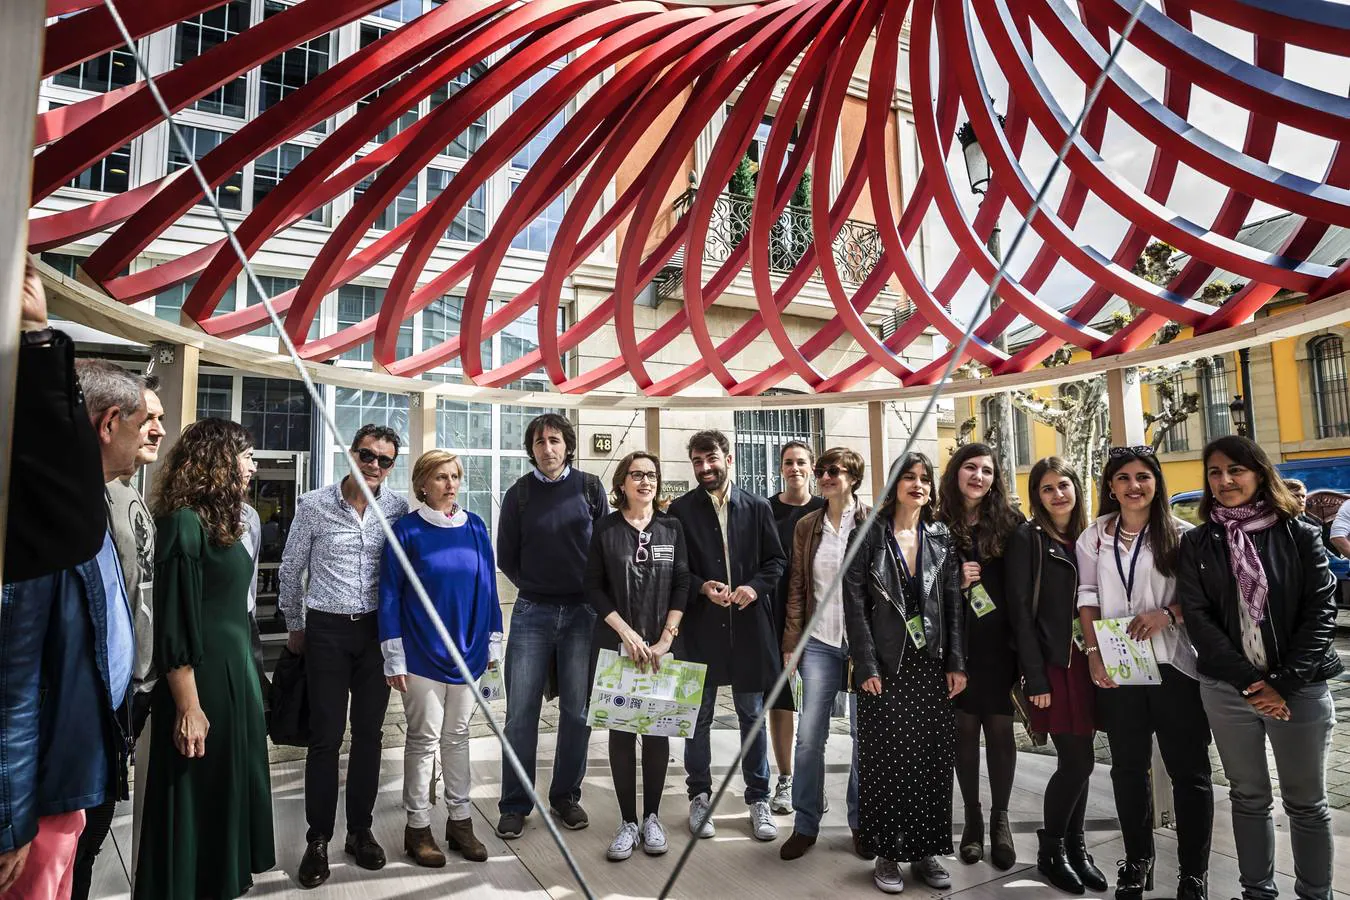 Catorce diseños y arquitecturas efímeras pueblan distintos rincones de Logroño hasta el uno de mayo